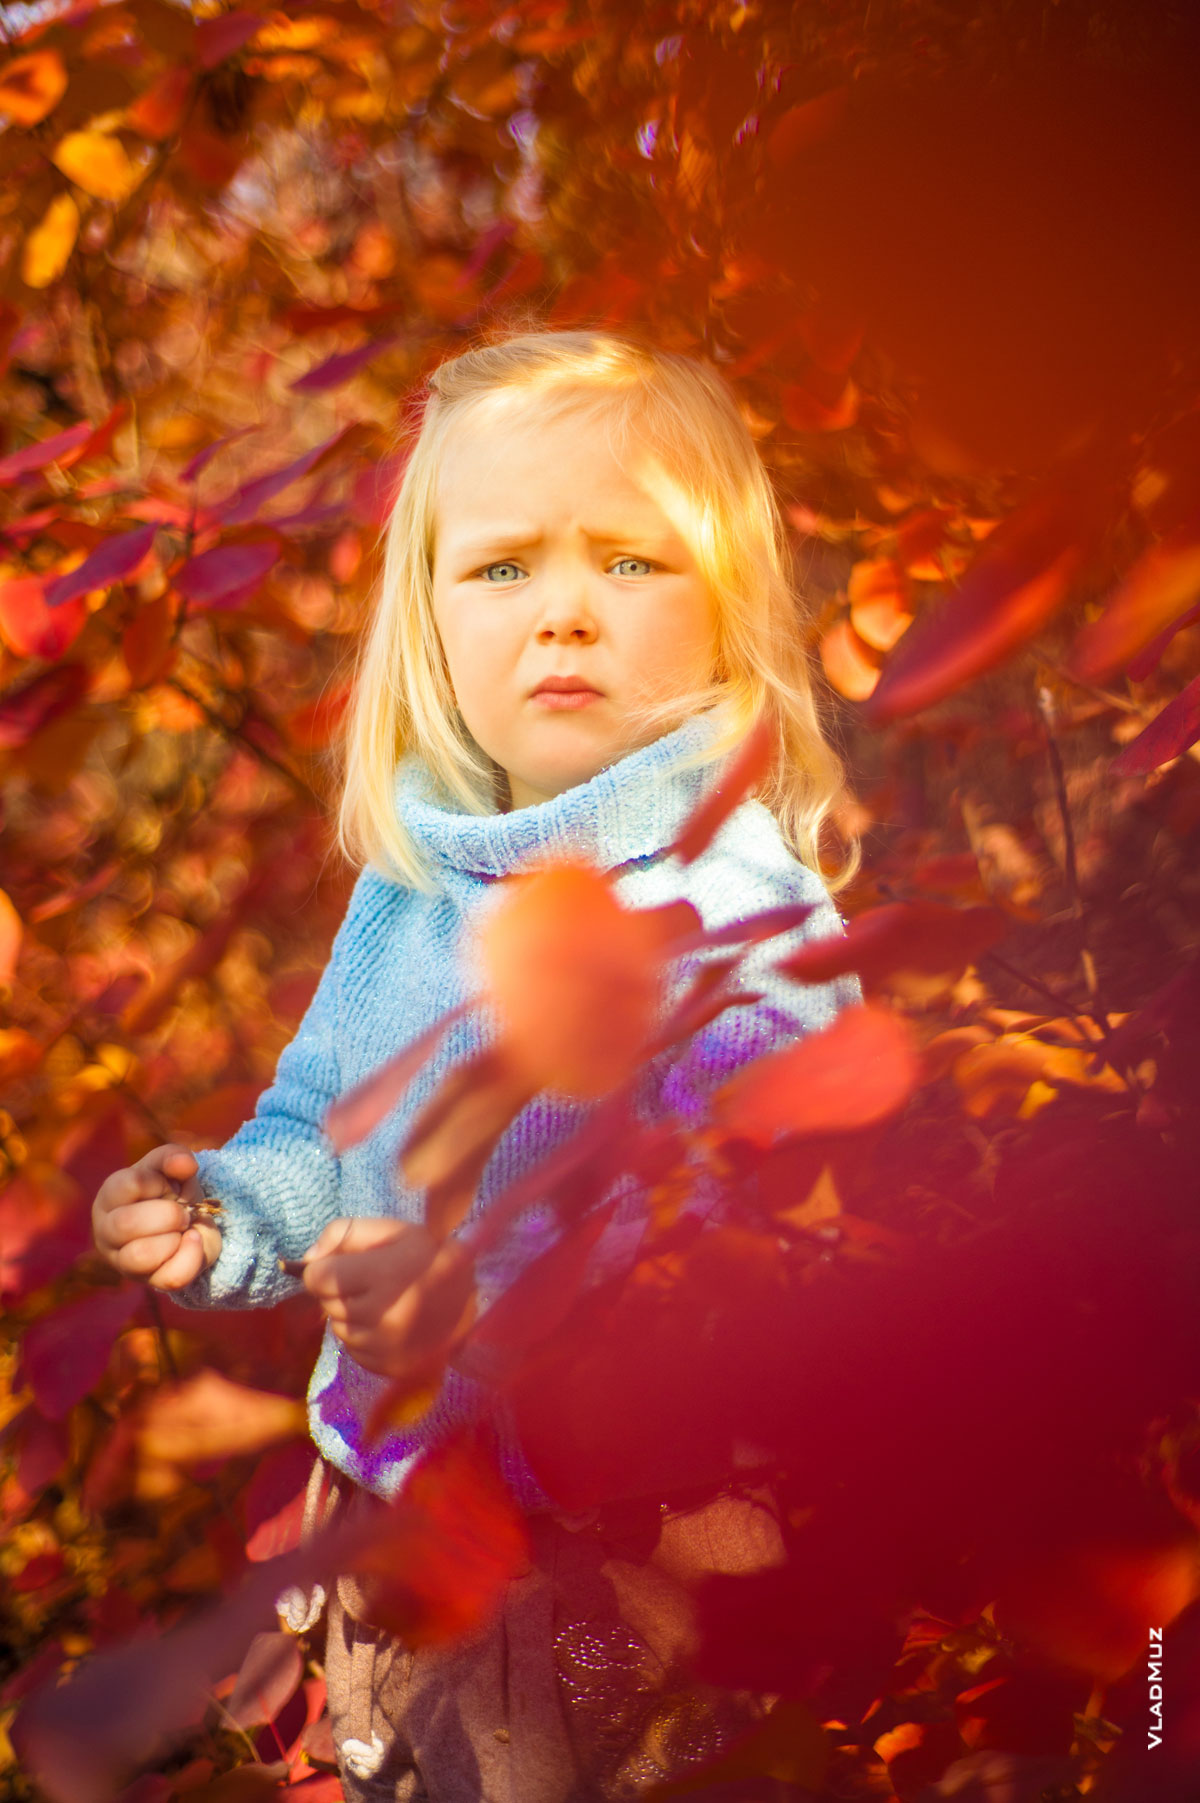 Яркое портретное фото девочки осенью в лучах солнца на фоне красных листьев